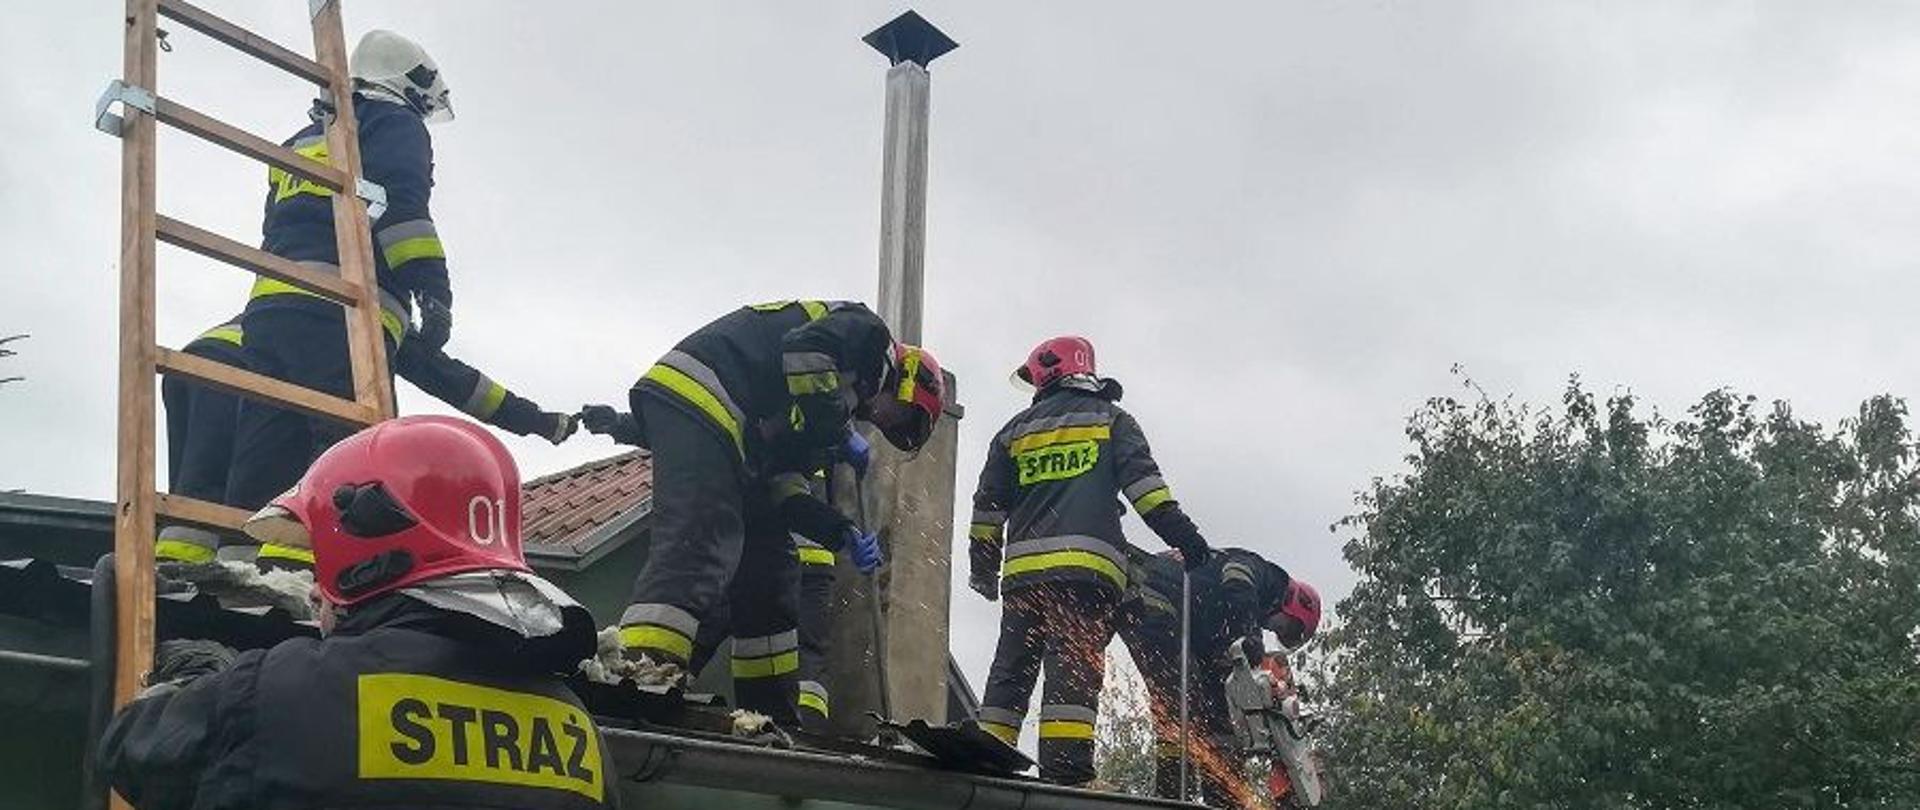 Strażacy na dachu budynku